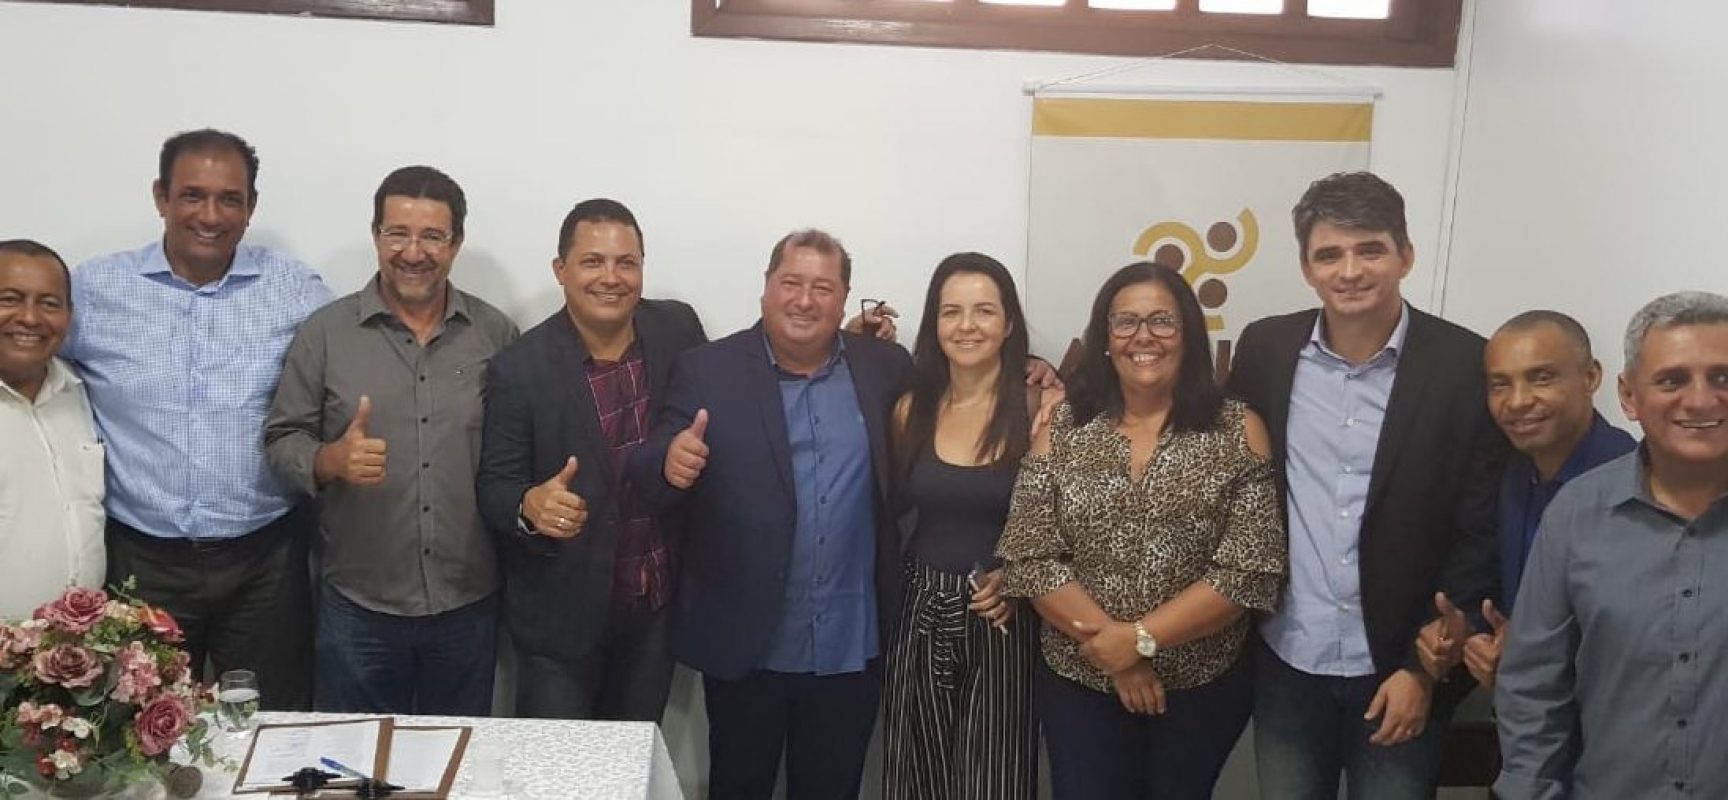 Lero Cunha é eleito presidente da Amurc por aclamação